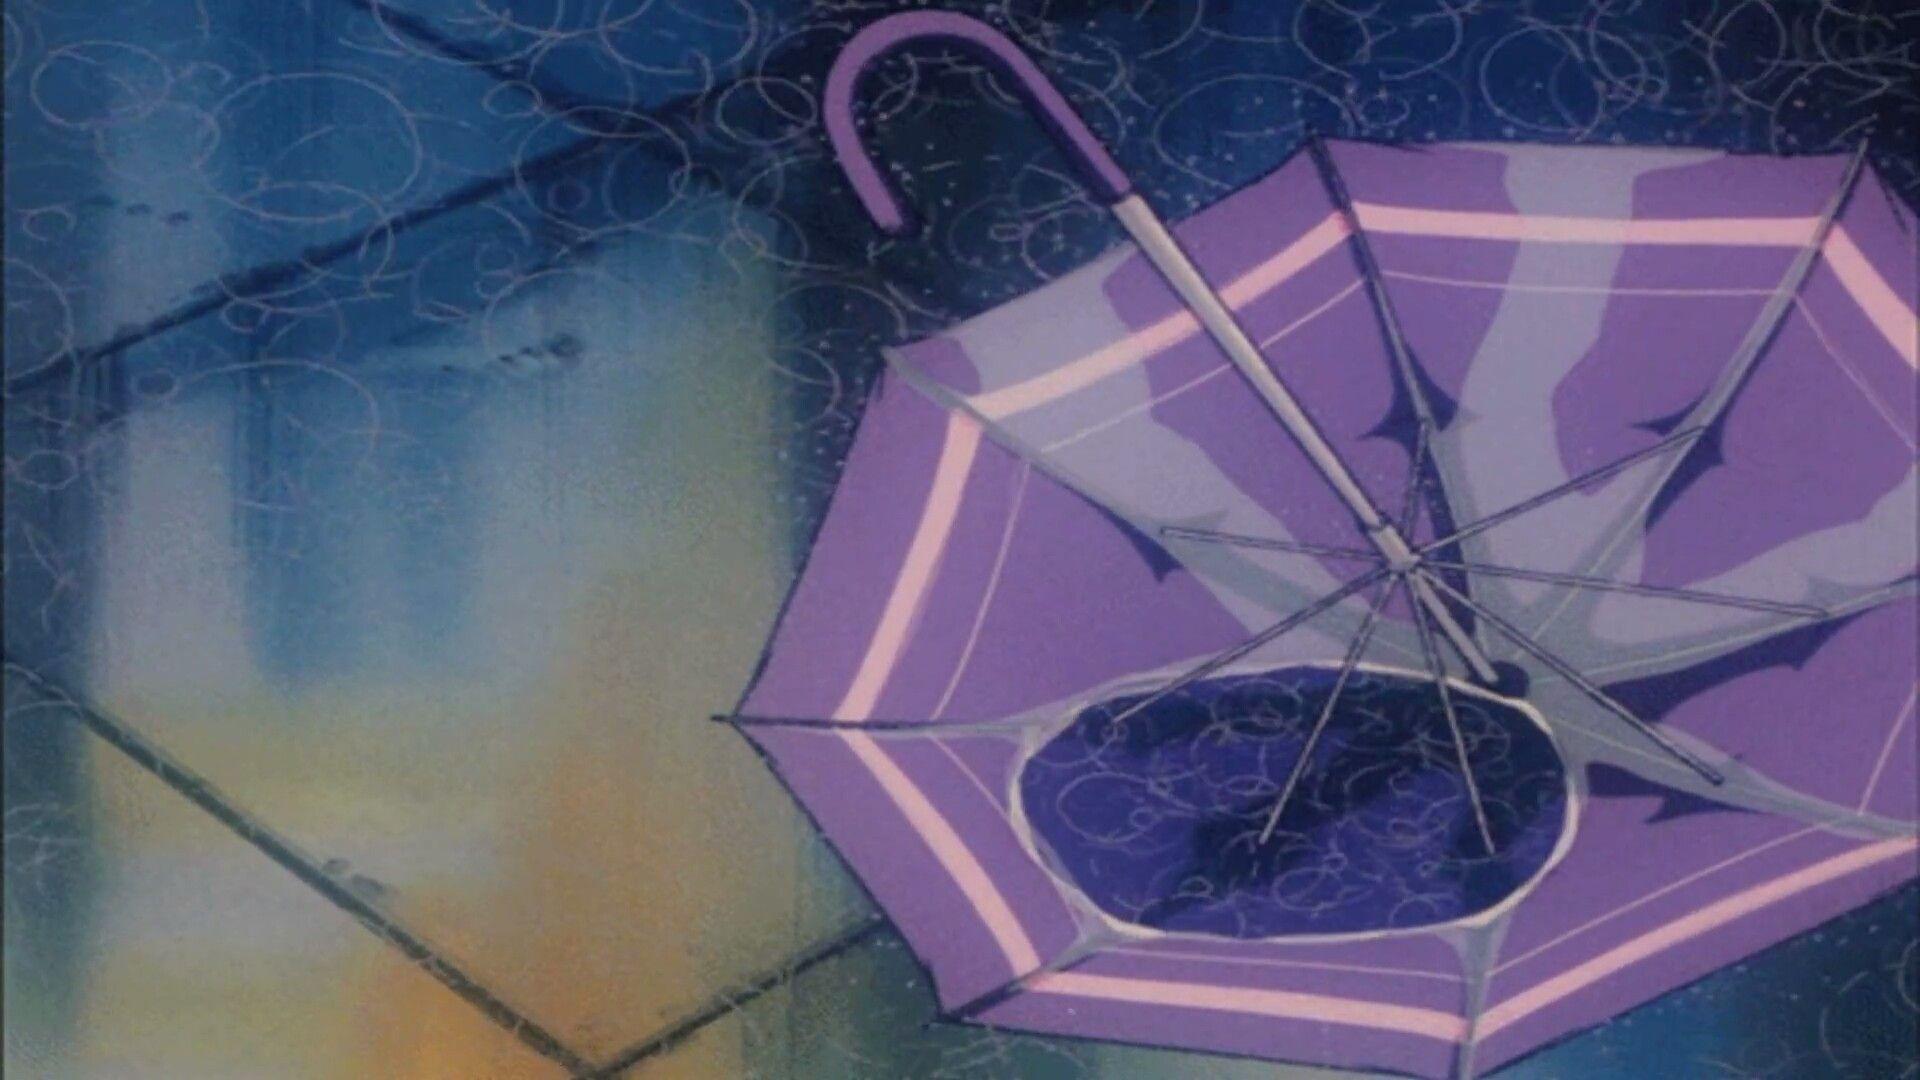 Aesthetic 90s Anime Umbrella .reddit.com